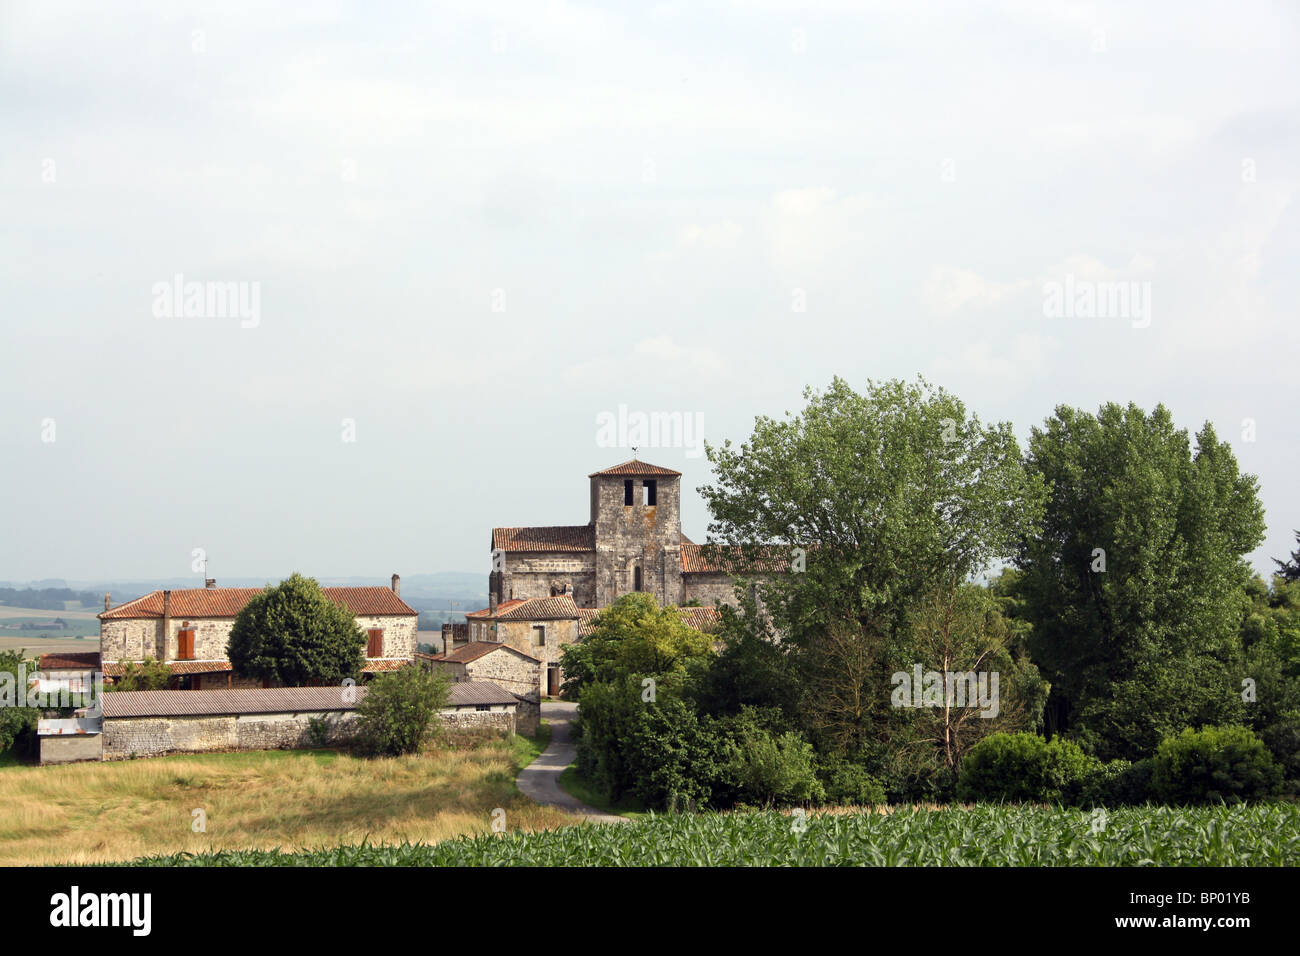 Dorf und Kirche von Magnac Lavalette, Charente, Frankreich. Stockfoto